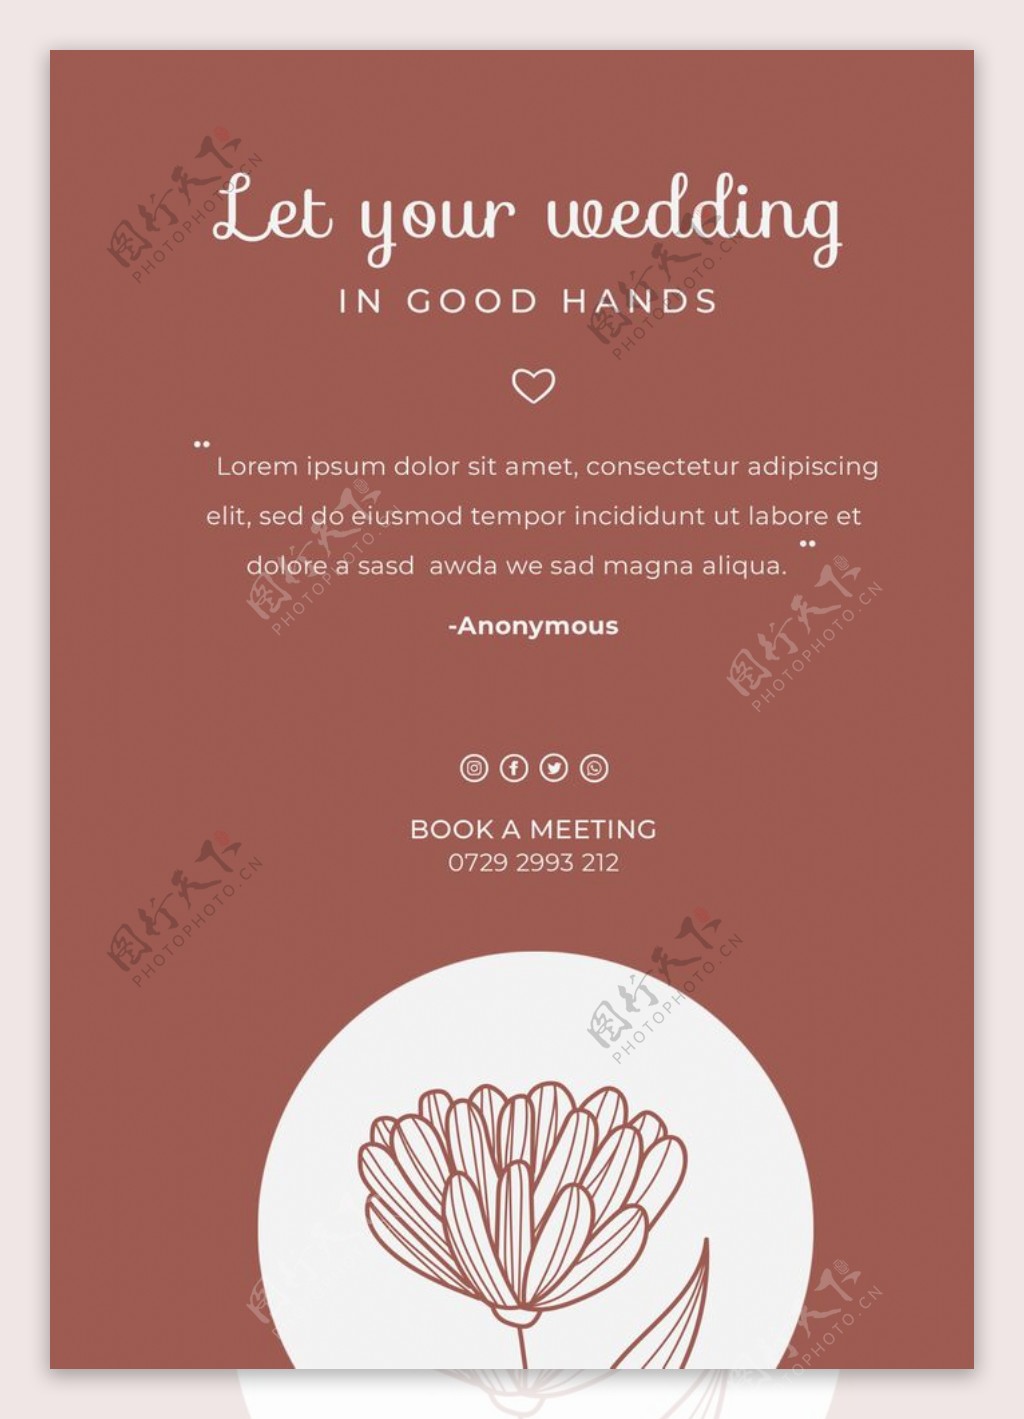 简约典雅的婚礼海报图片